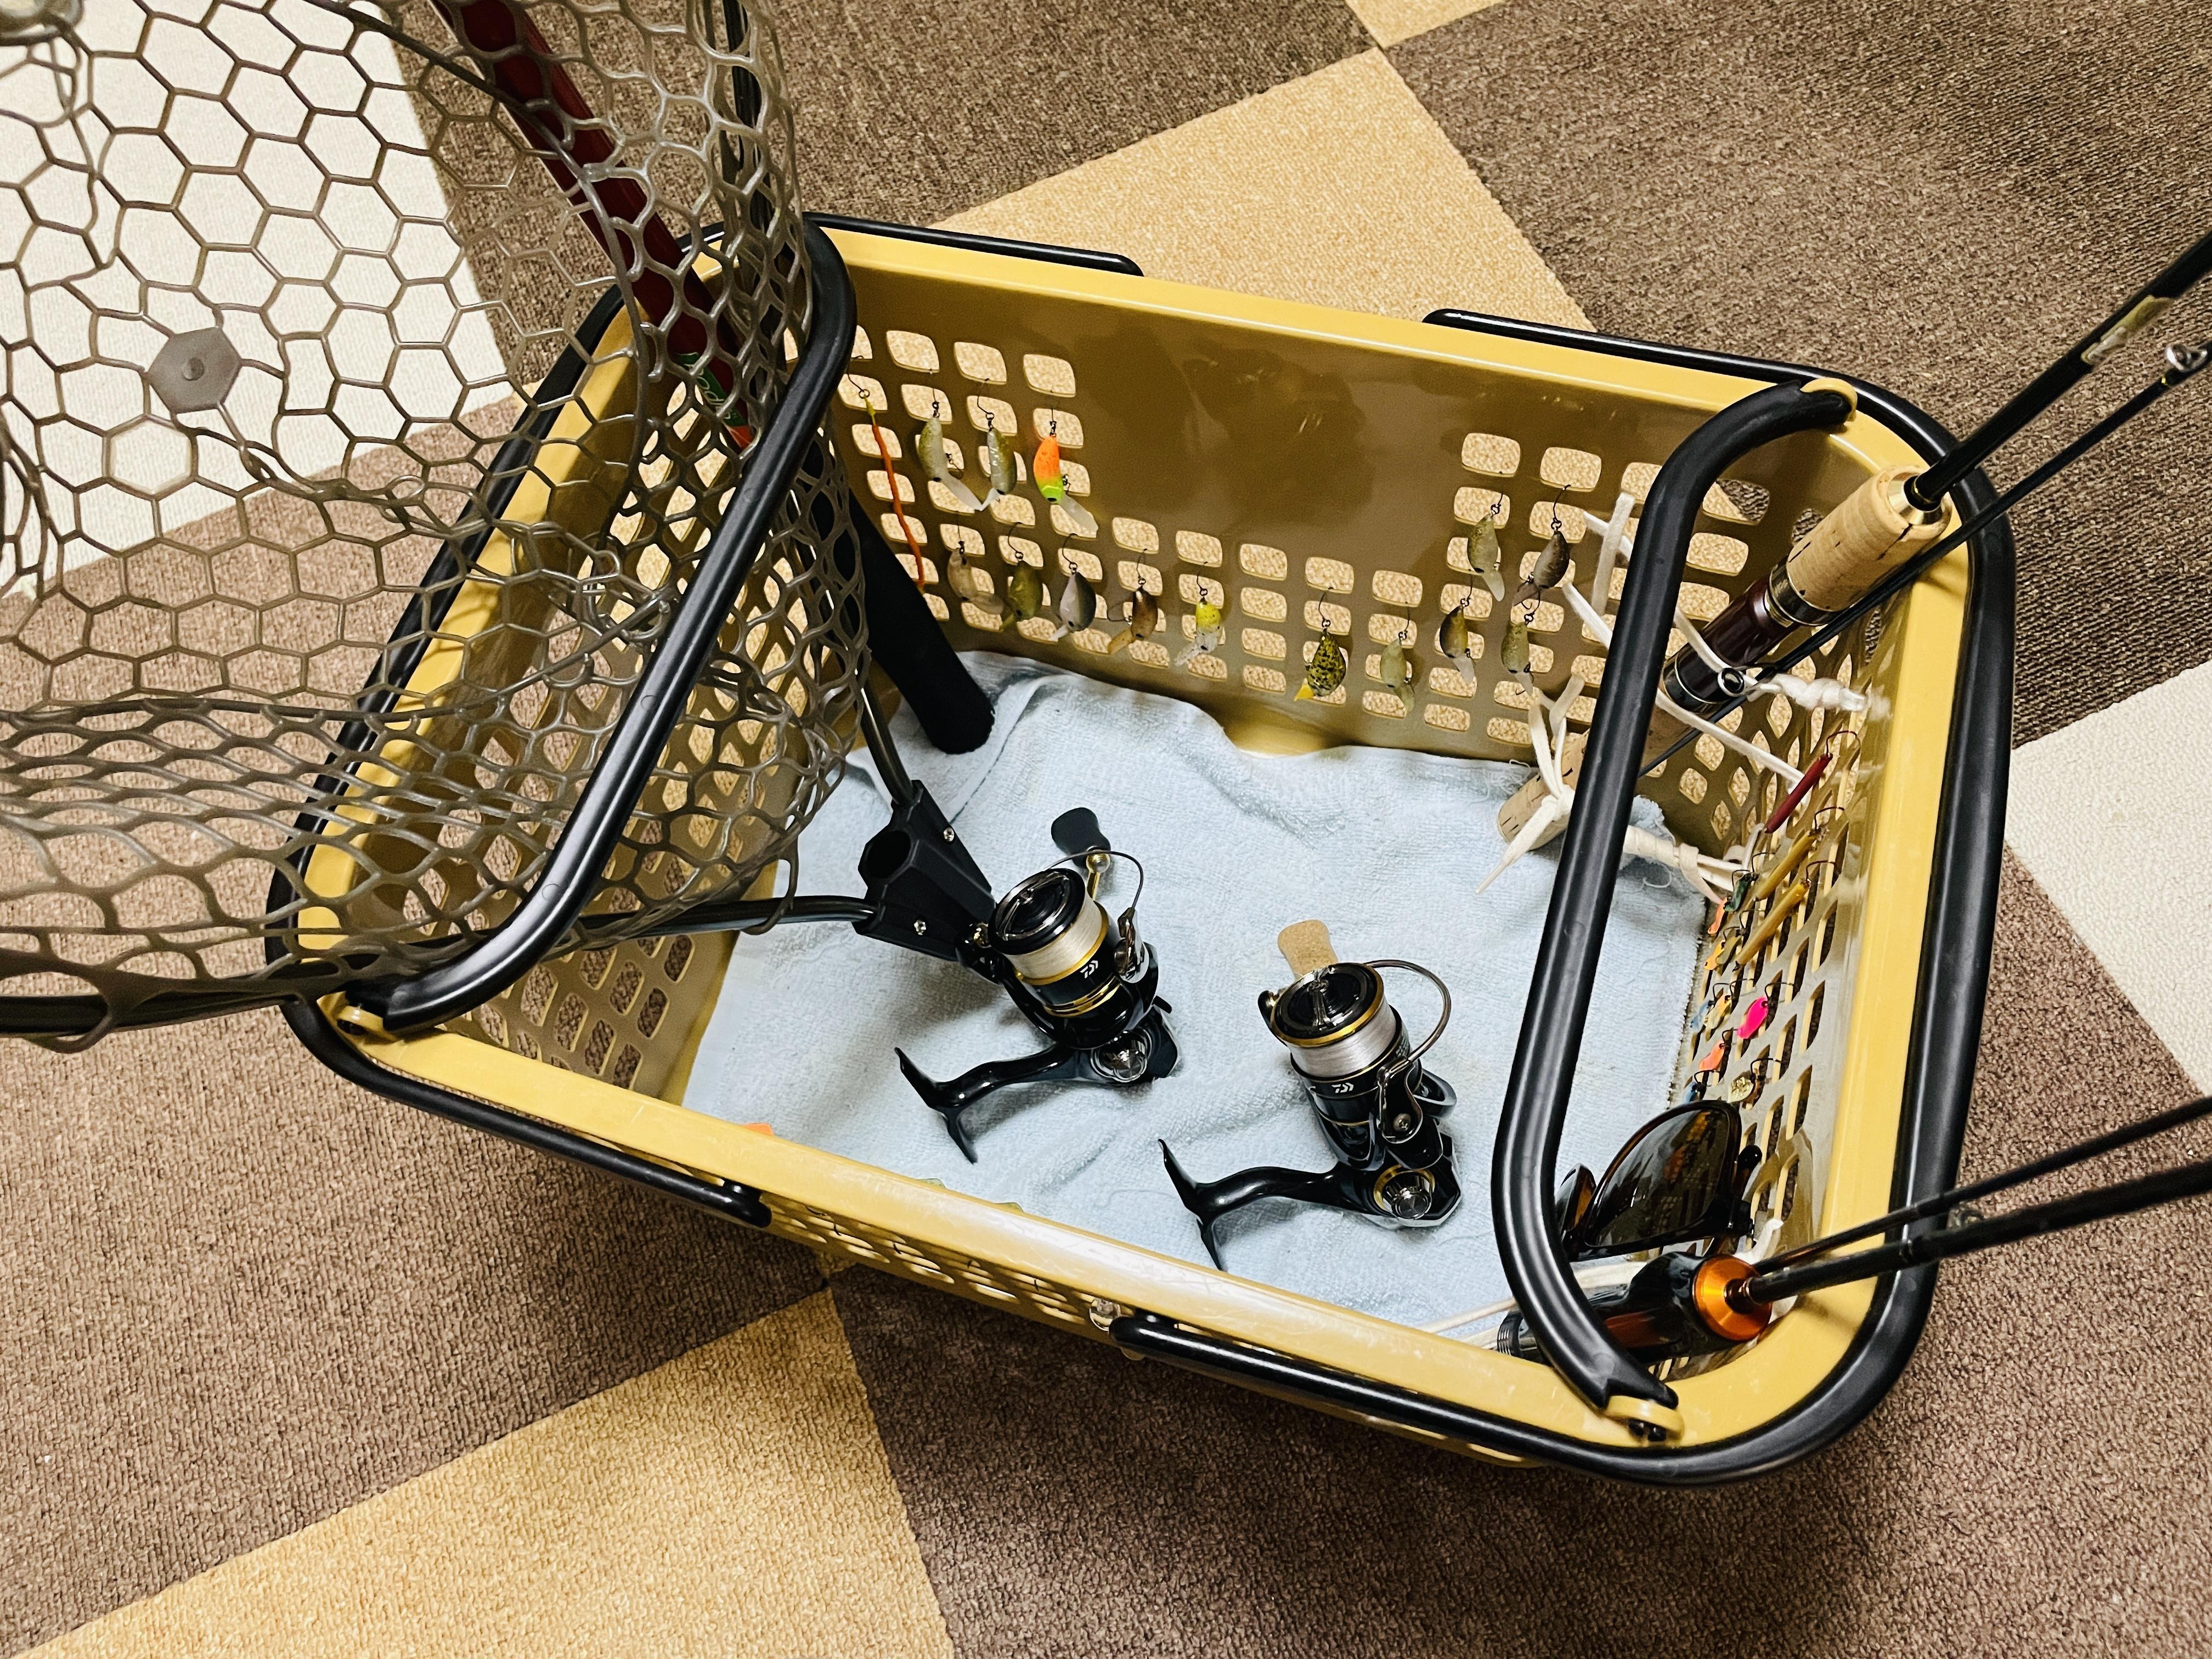 洗った釣具は
ツリノ スタッキングバスケットへ。
最小限のスペースで
乾かすことができますよ！